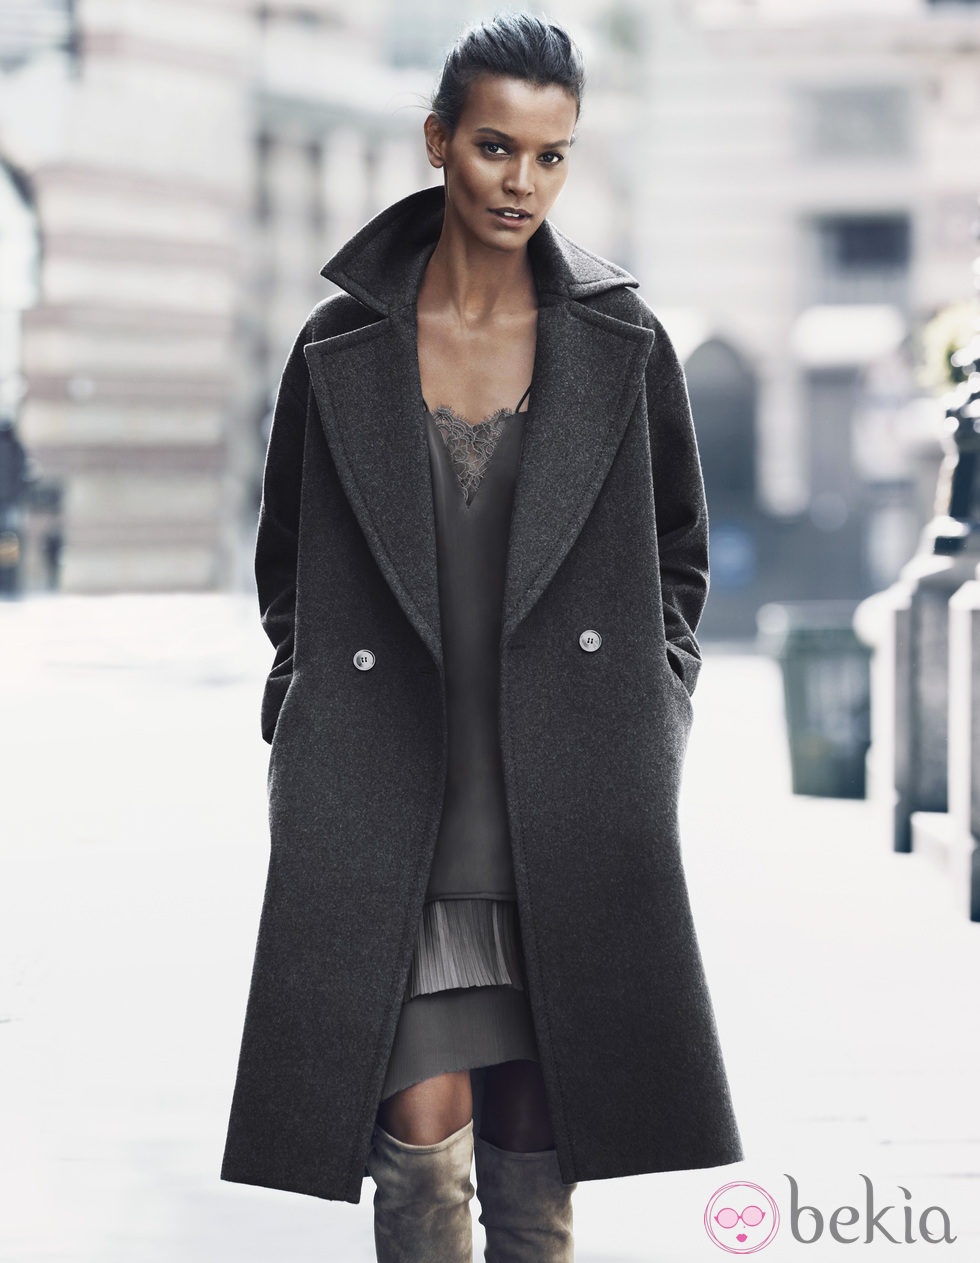 Vestido lencero y abrigo de lana de H&M para otoño/invierno 2014